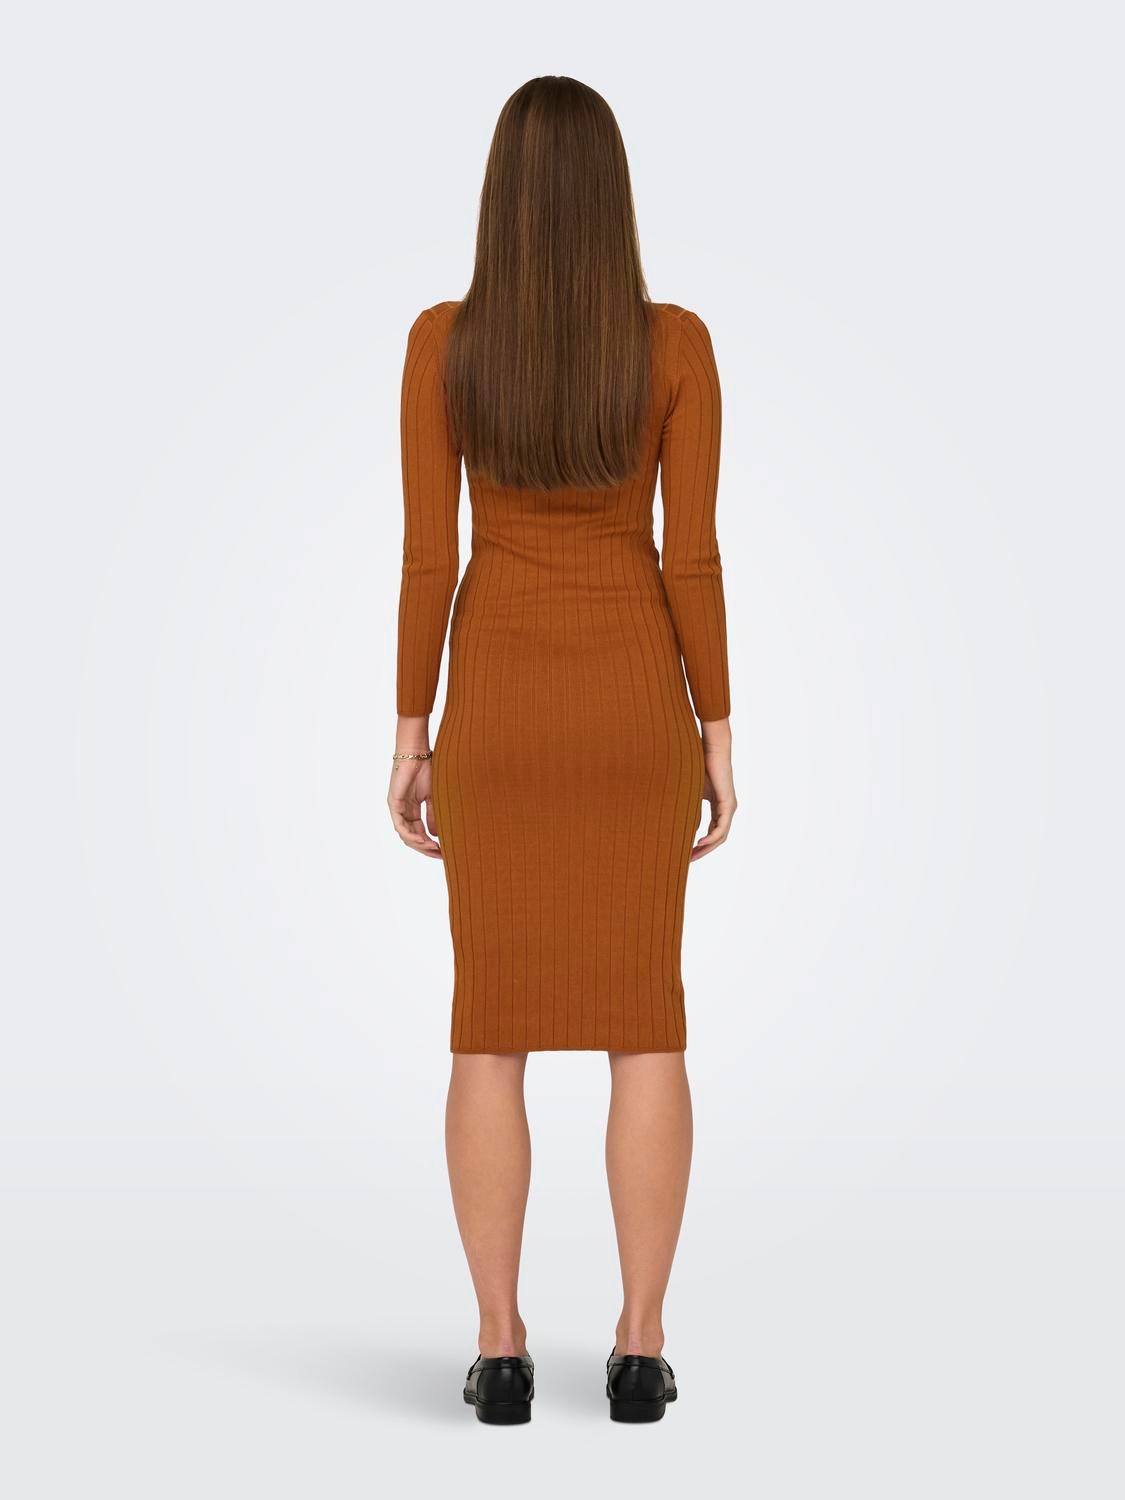 ONLY Nauwsluitende Gebreide jurk -Leather Brown - 15207693